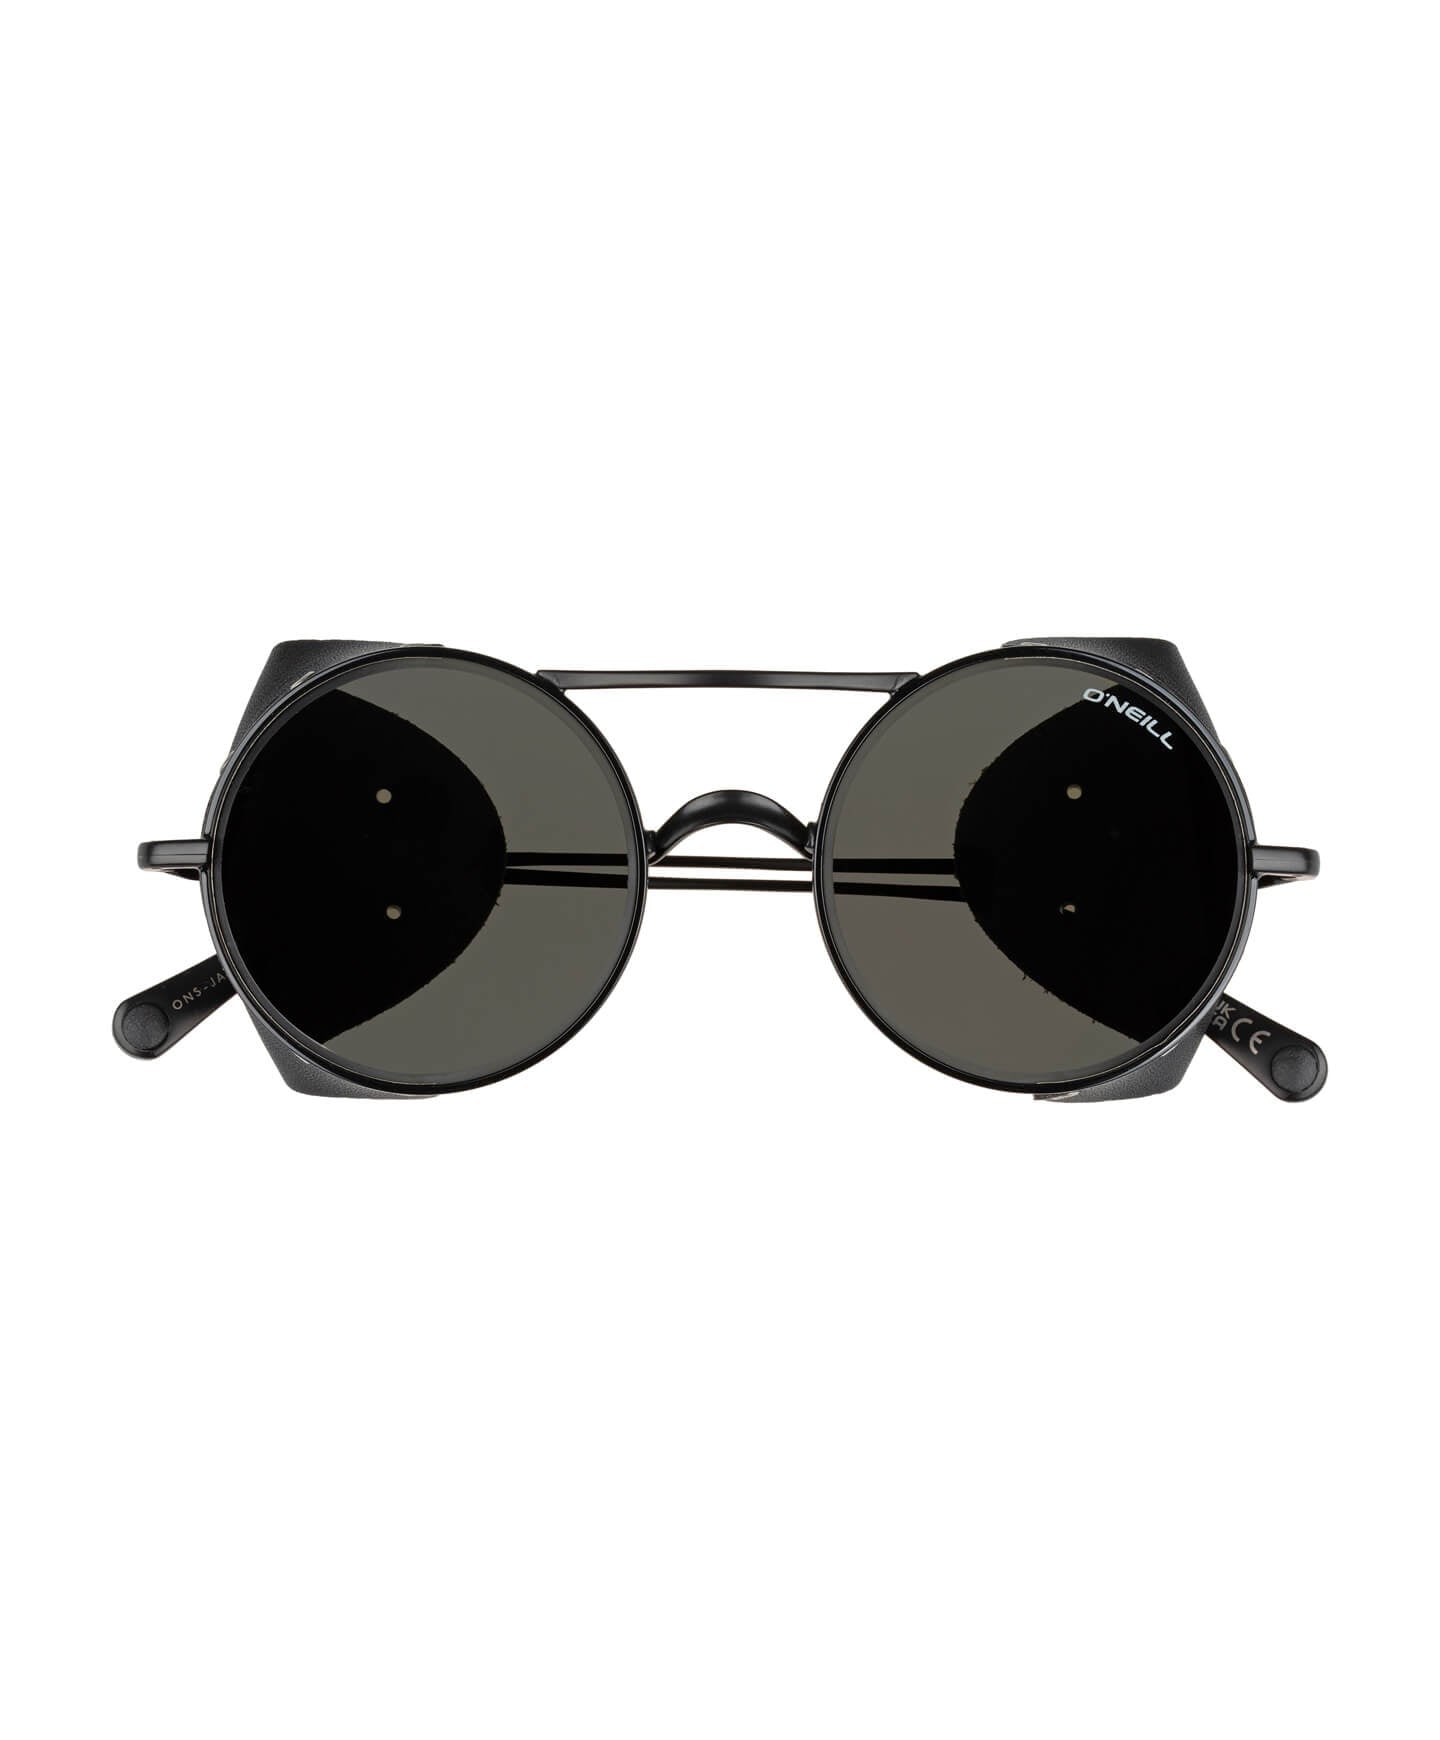 Jack 2.0 Sunglasses - Black